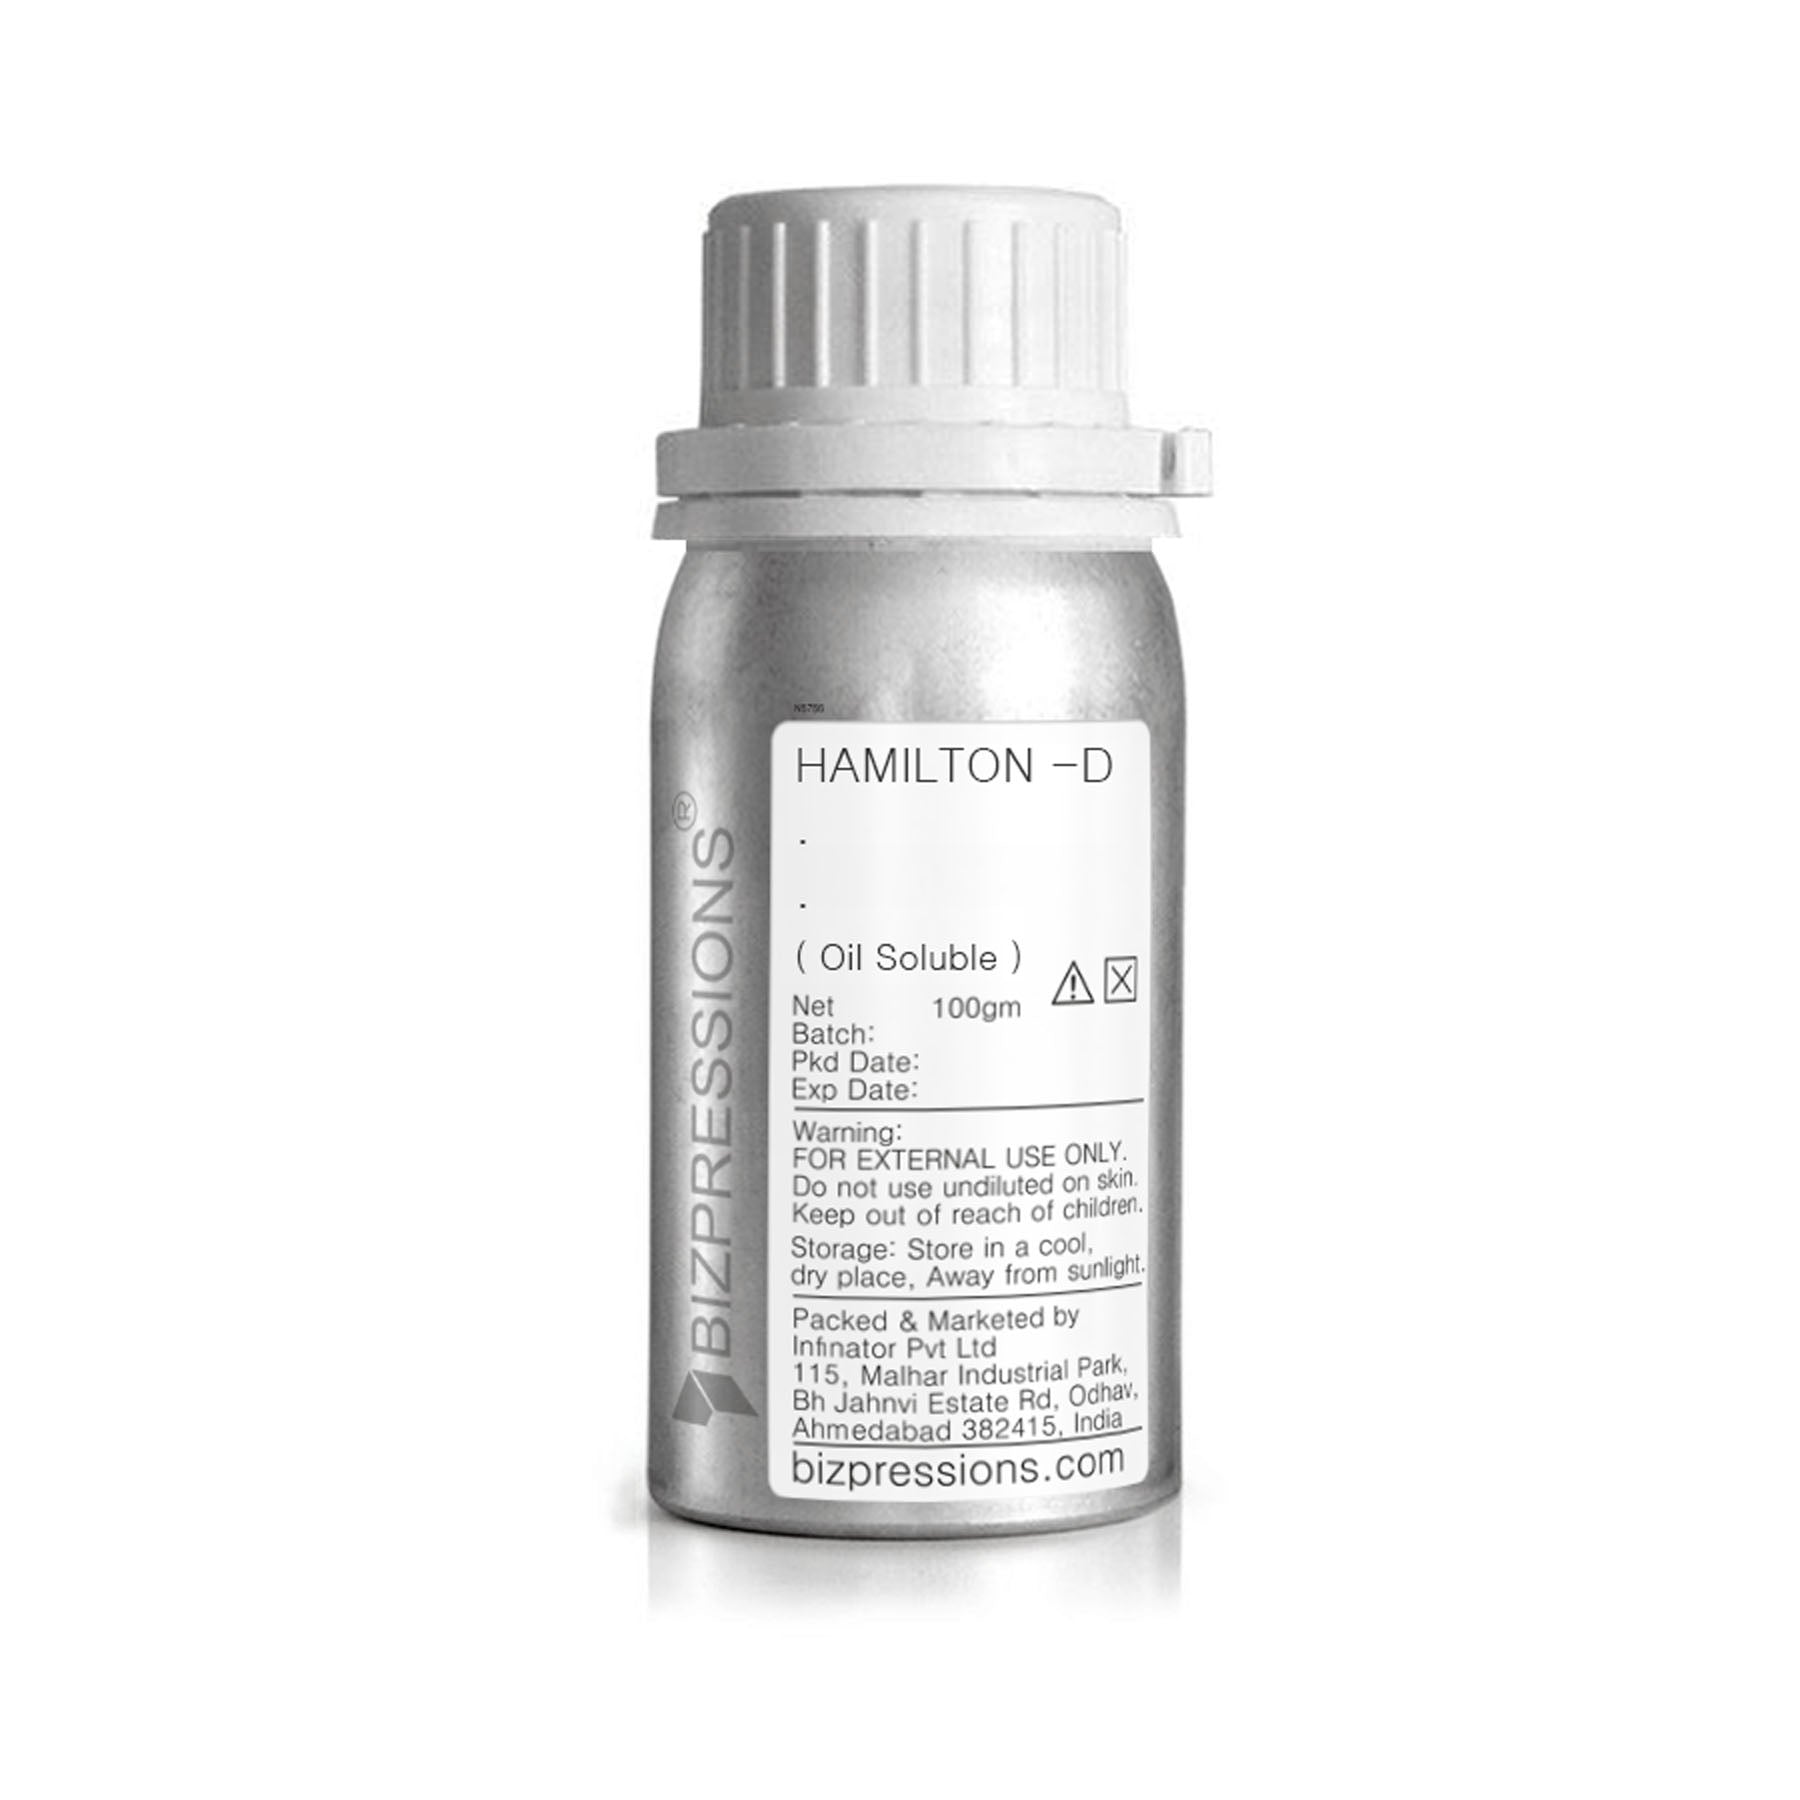 HAMILTON -D - Fragrance ( Oil Soluble ) - 100 gm